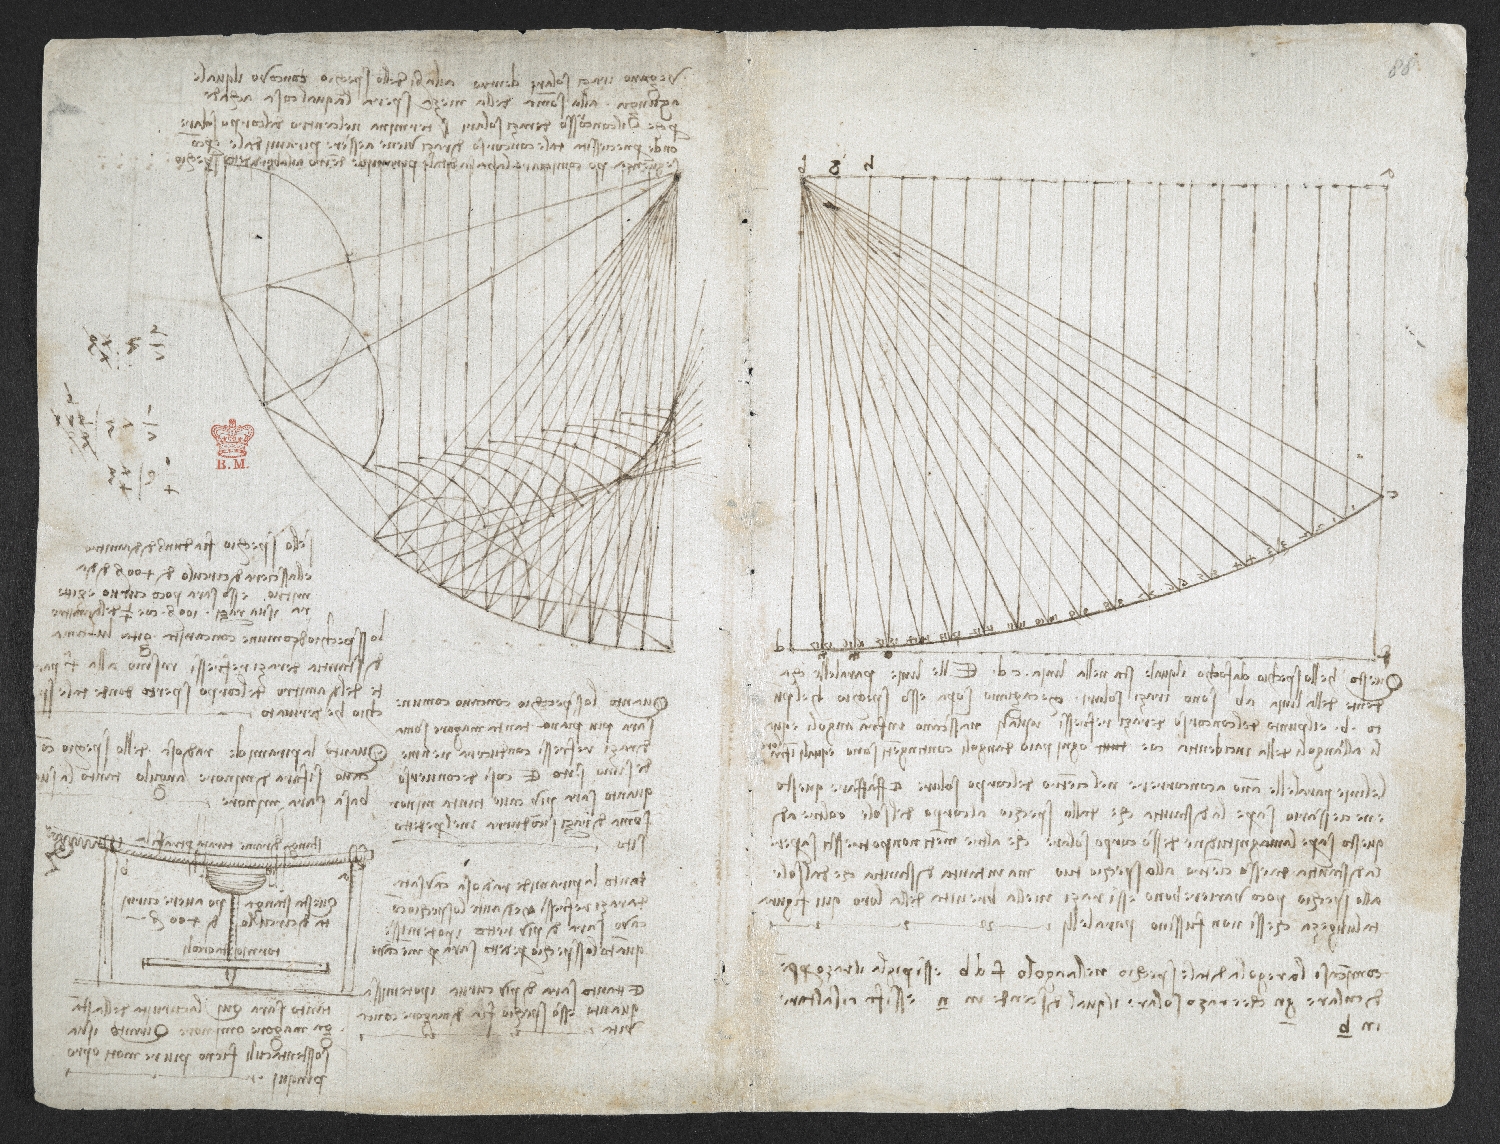 Leonardo da Vinci’s Visionary Notebooks Now Online: Browse 570 Digitized Pages Artes & contextos b417c5c60bd9763ed700d78872d9624a